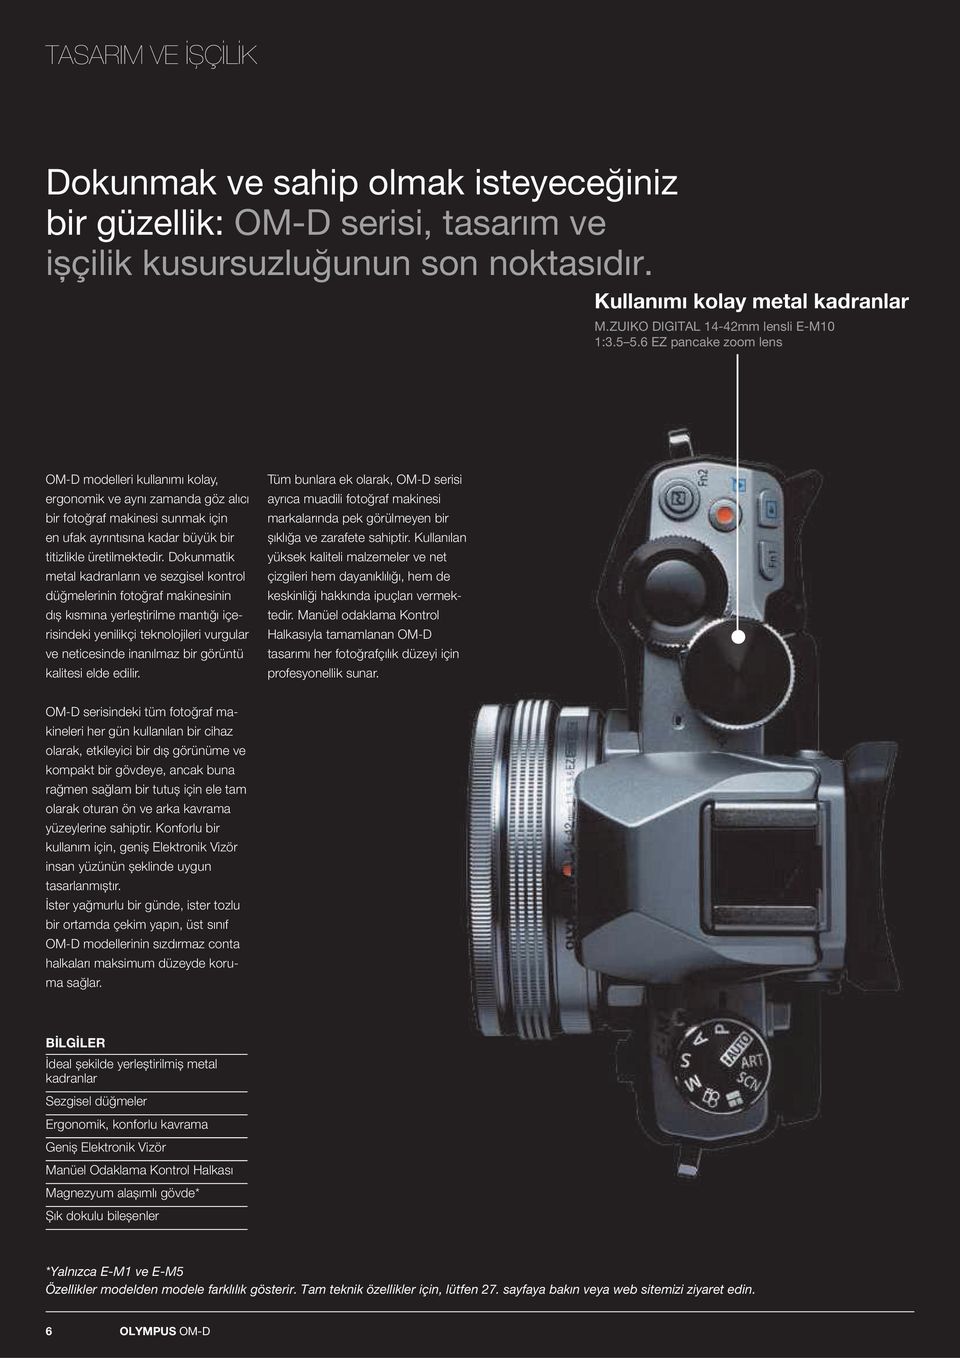 6 EZ pancake zoom lens OM-D modelleri kullanımı kolay, ergonomik ve aynı zamanda göz alıcı bir fotoğraf makinesi sunmak için en ufak ayrıntısına kadar büyük bir titizlikle üretilmektedir.